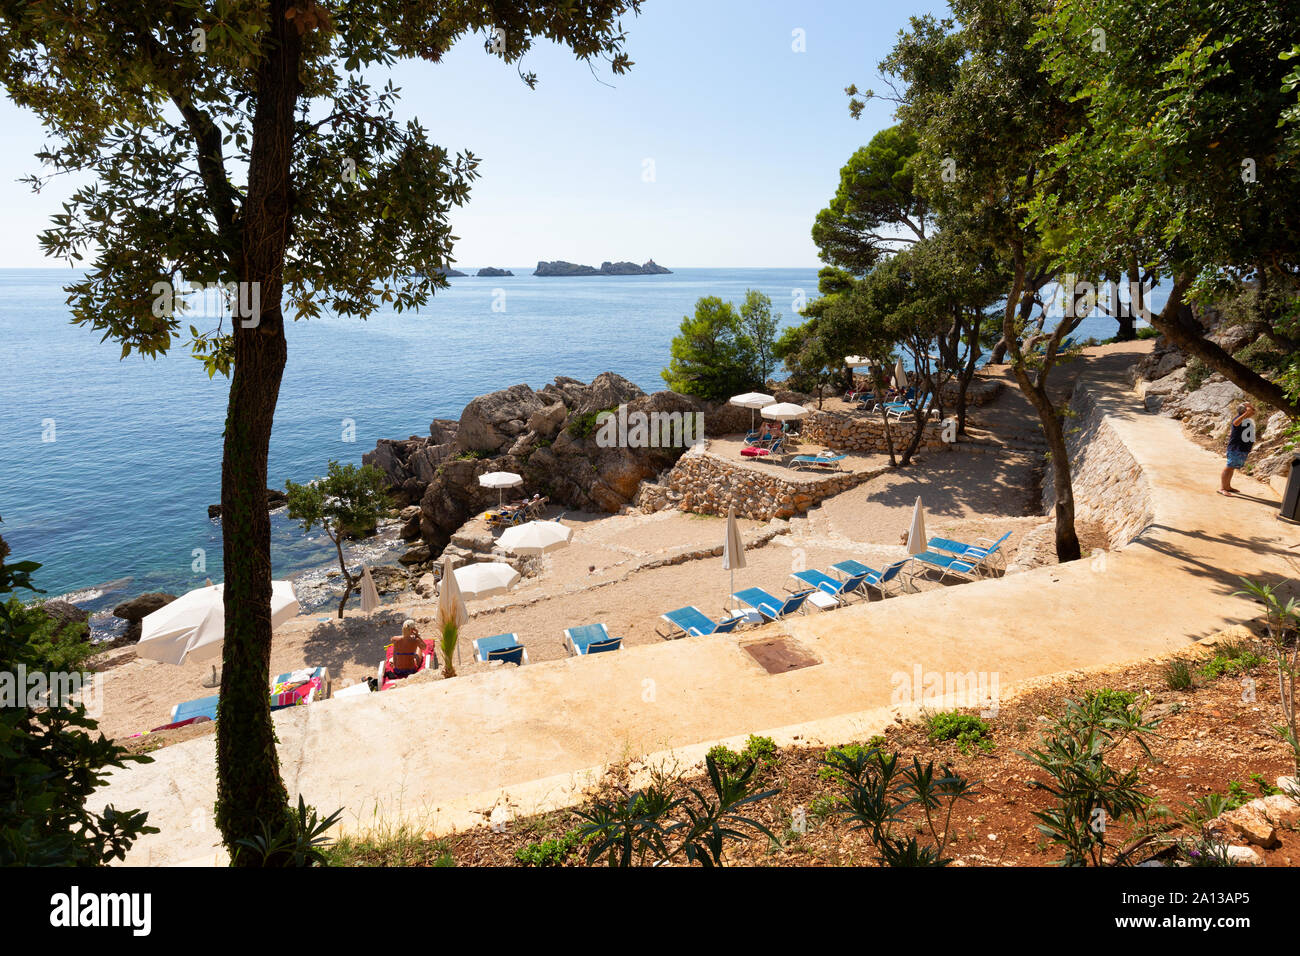 Costa dálmata - gente tomando sol en vacaciones en la rocosa costa croata cerca de Dubrovnik, Croacia, Europa Foto de stock